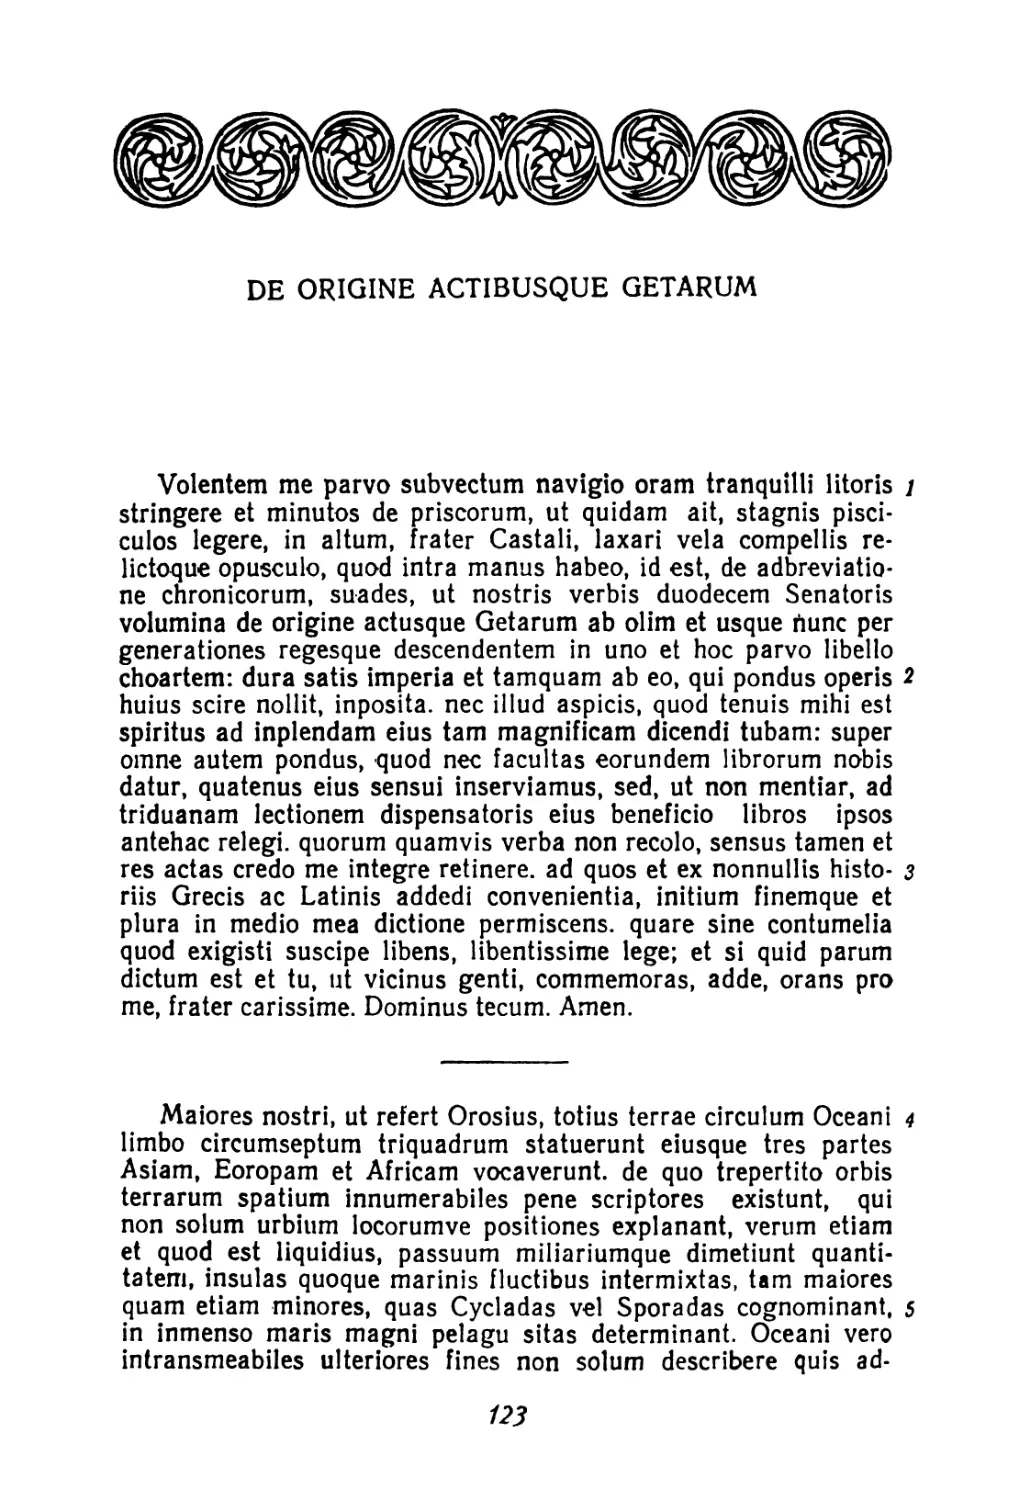 De origine actibusque Getarum